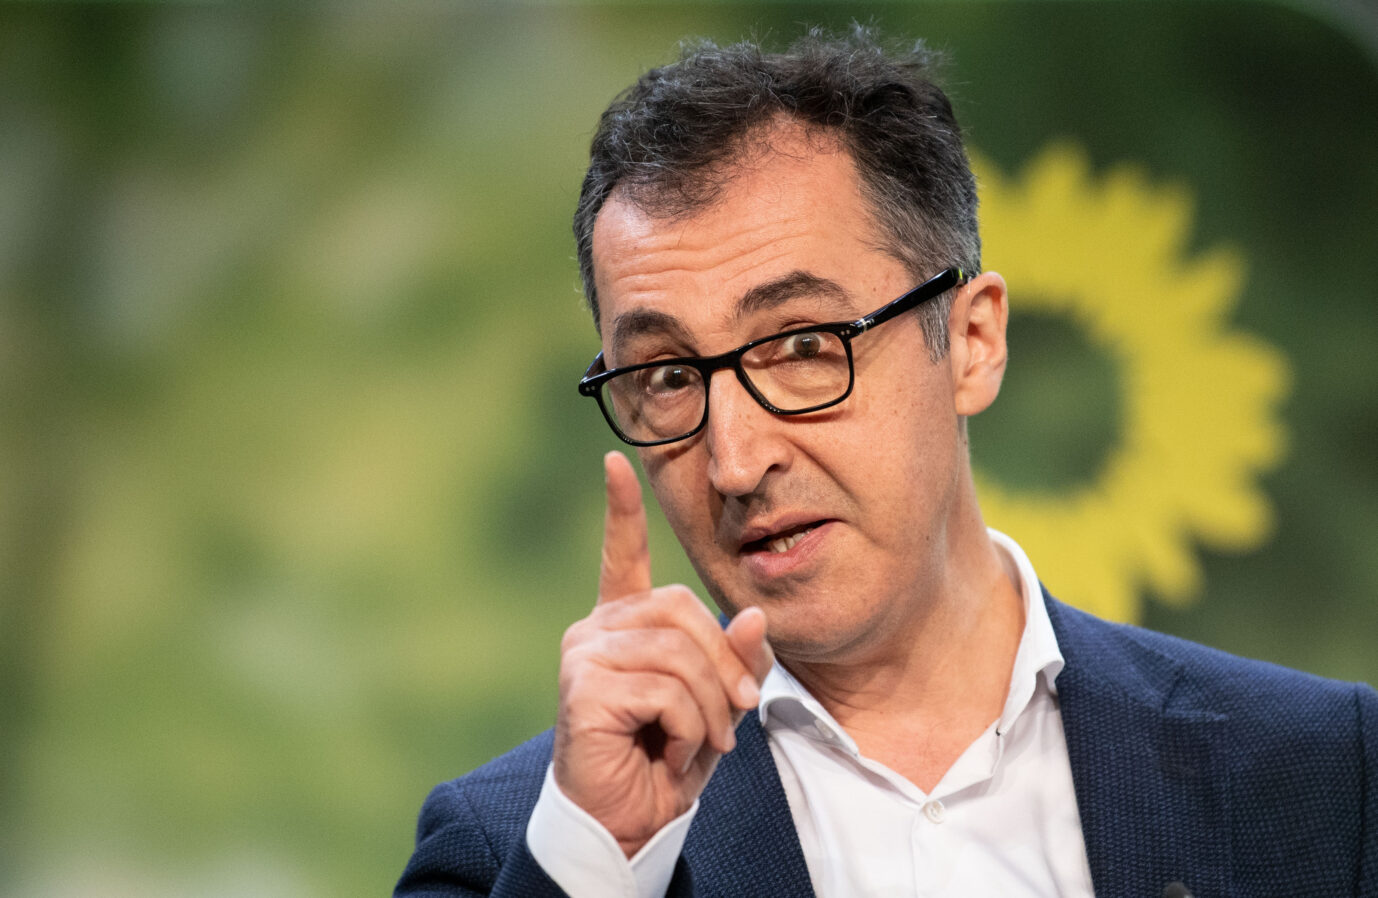 Der designierte Landwirtschaftsminister Cem Özdemir (Grüne): Fehler würden ihm stärker zur Last gelegt als seinen deutschen Parteikollegen